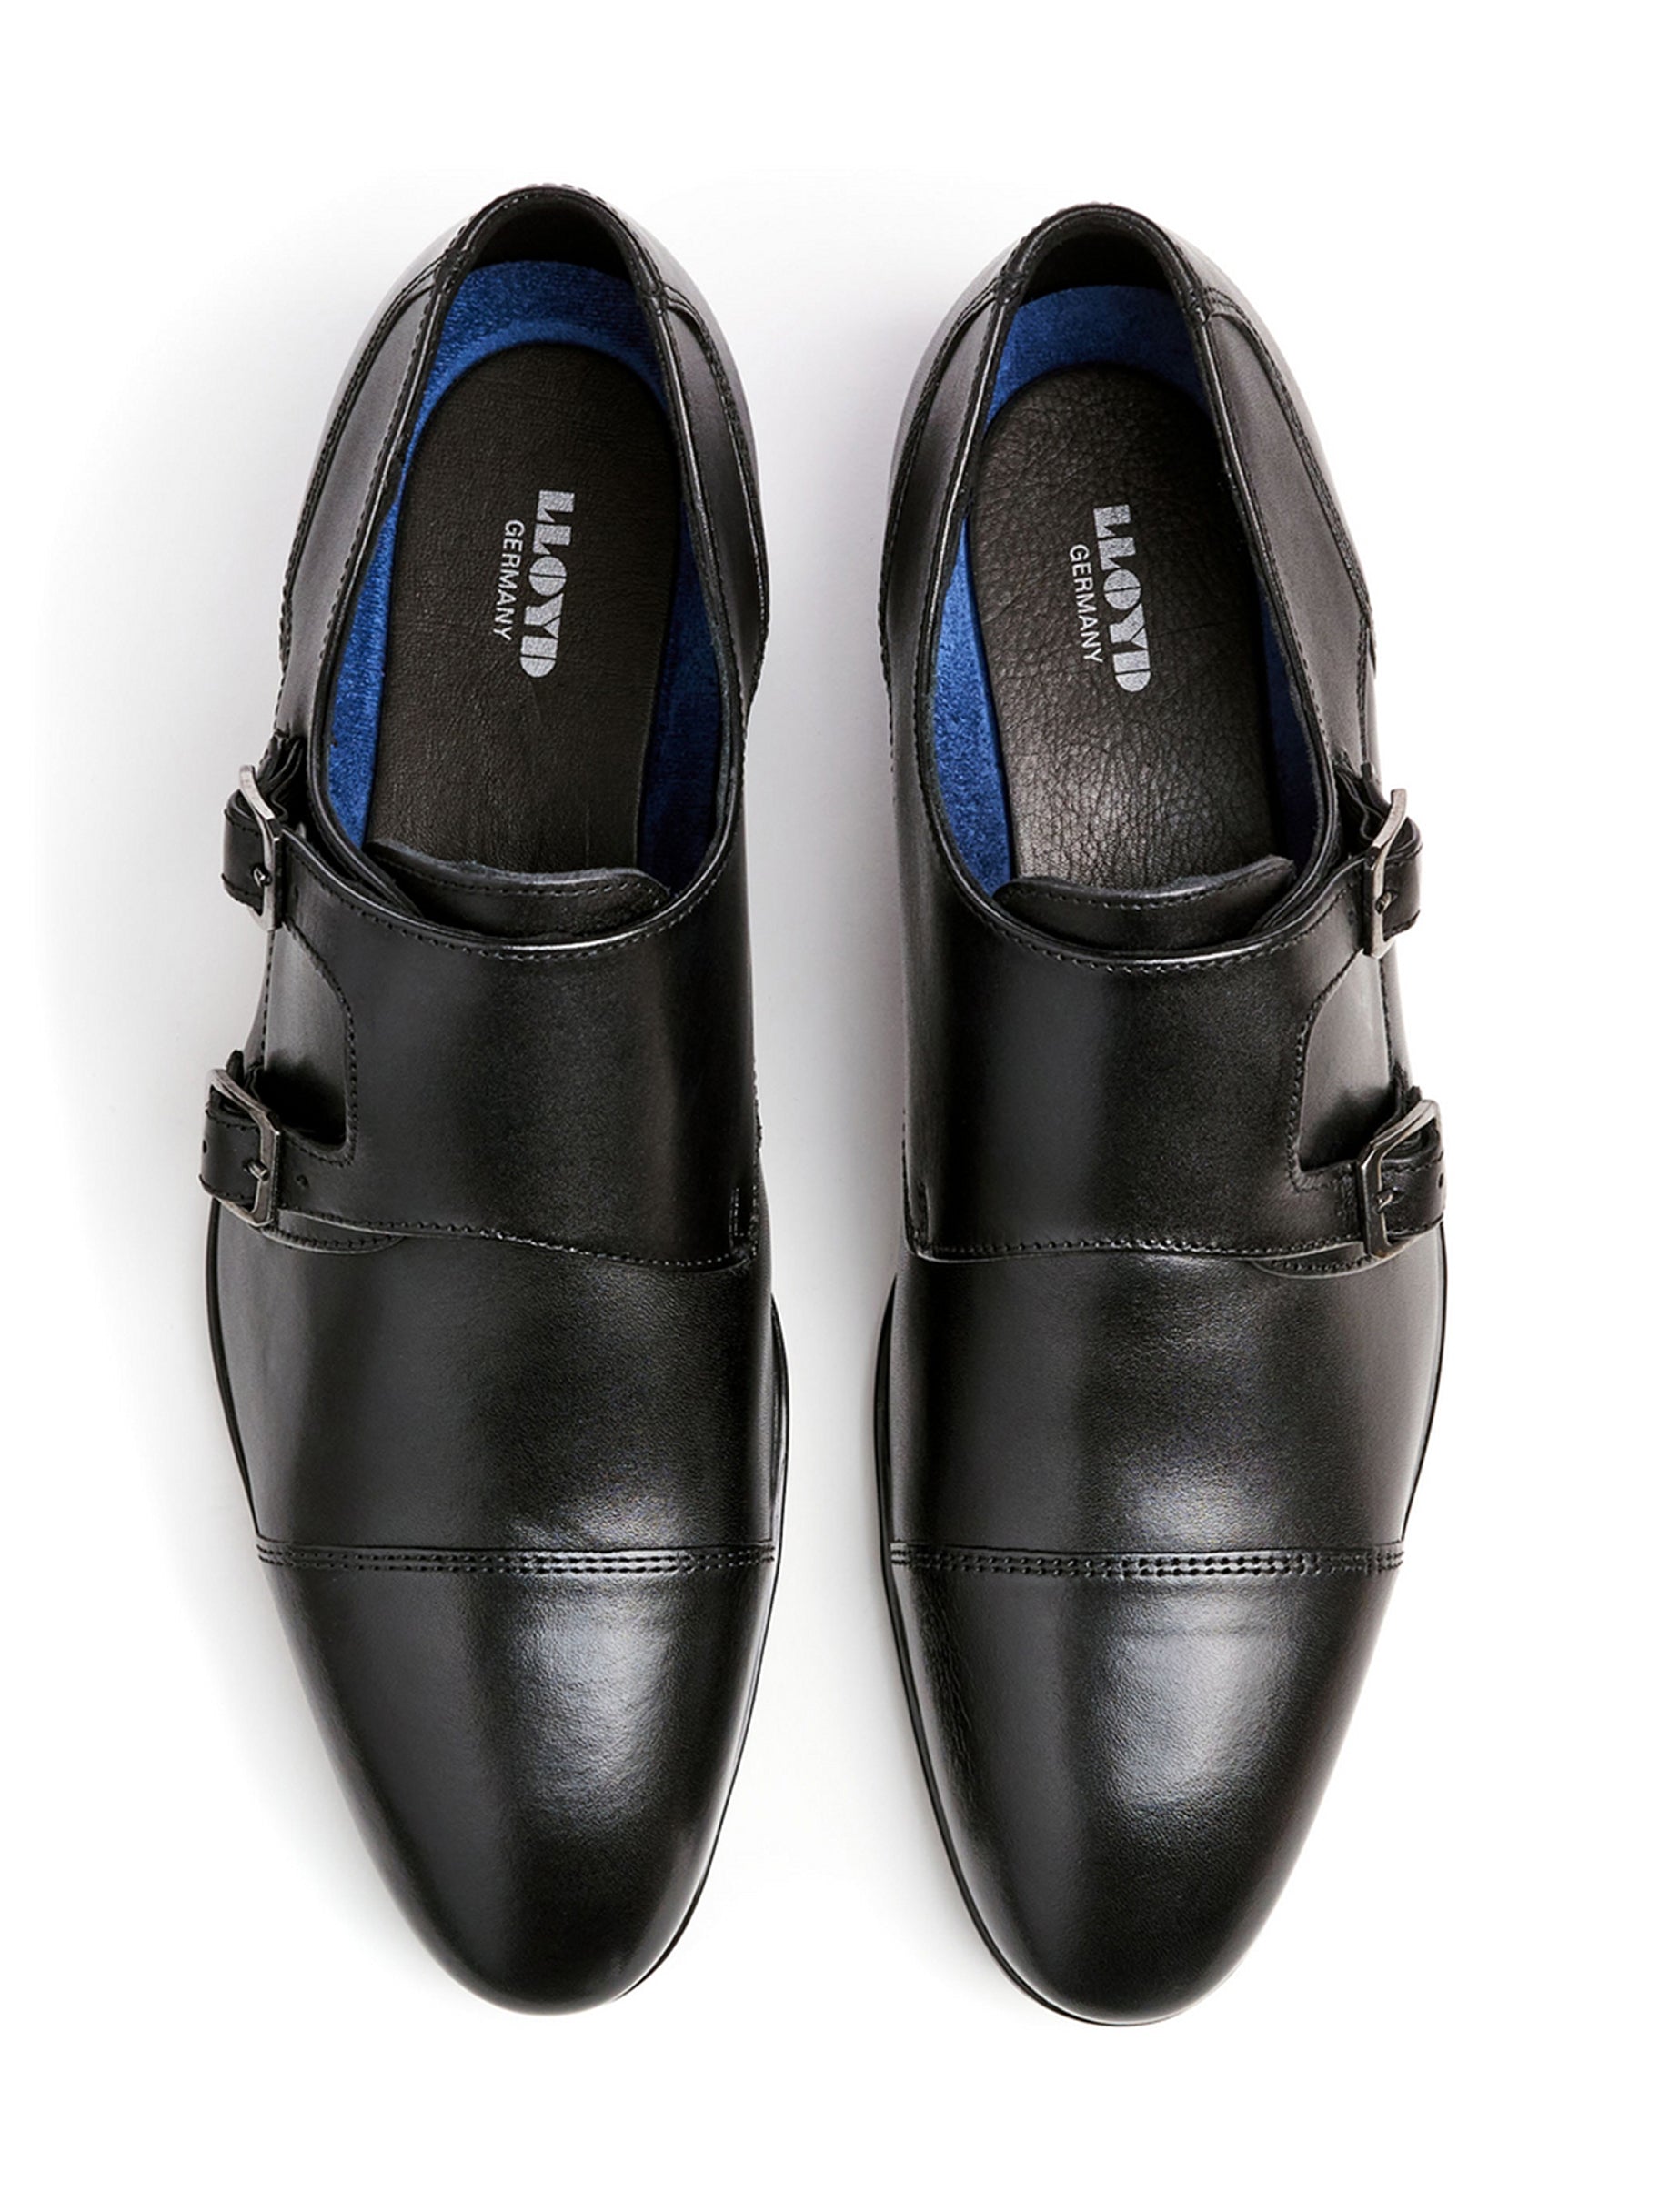 HANNOVER BLACK | Peter Sheppard Footwear